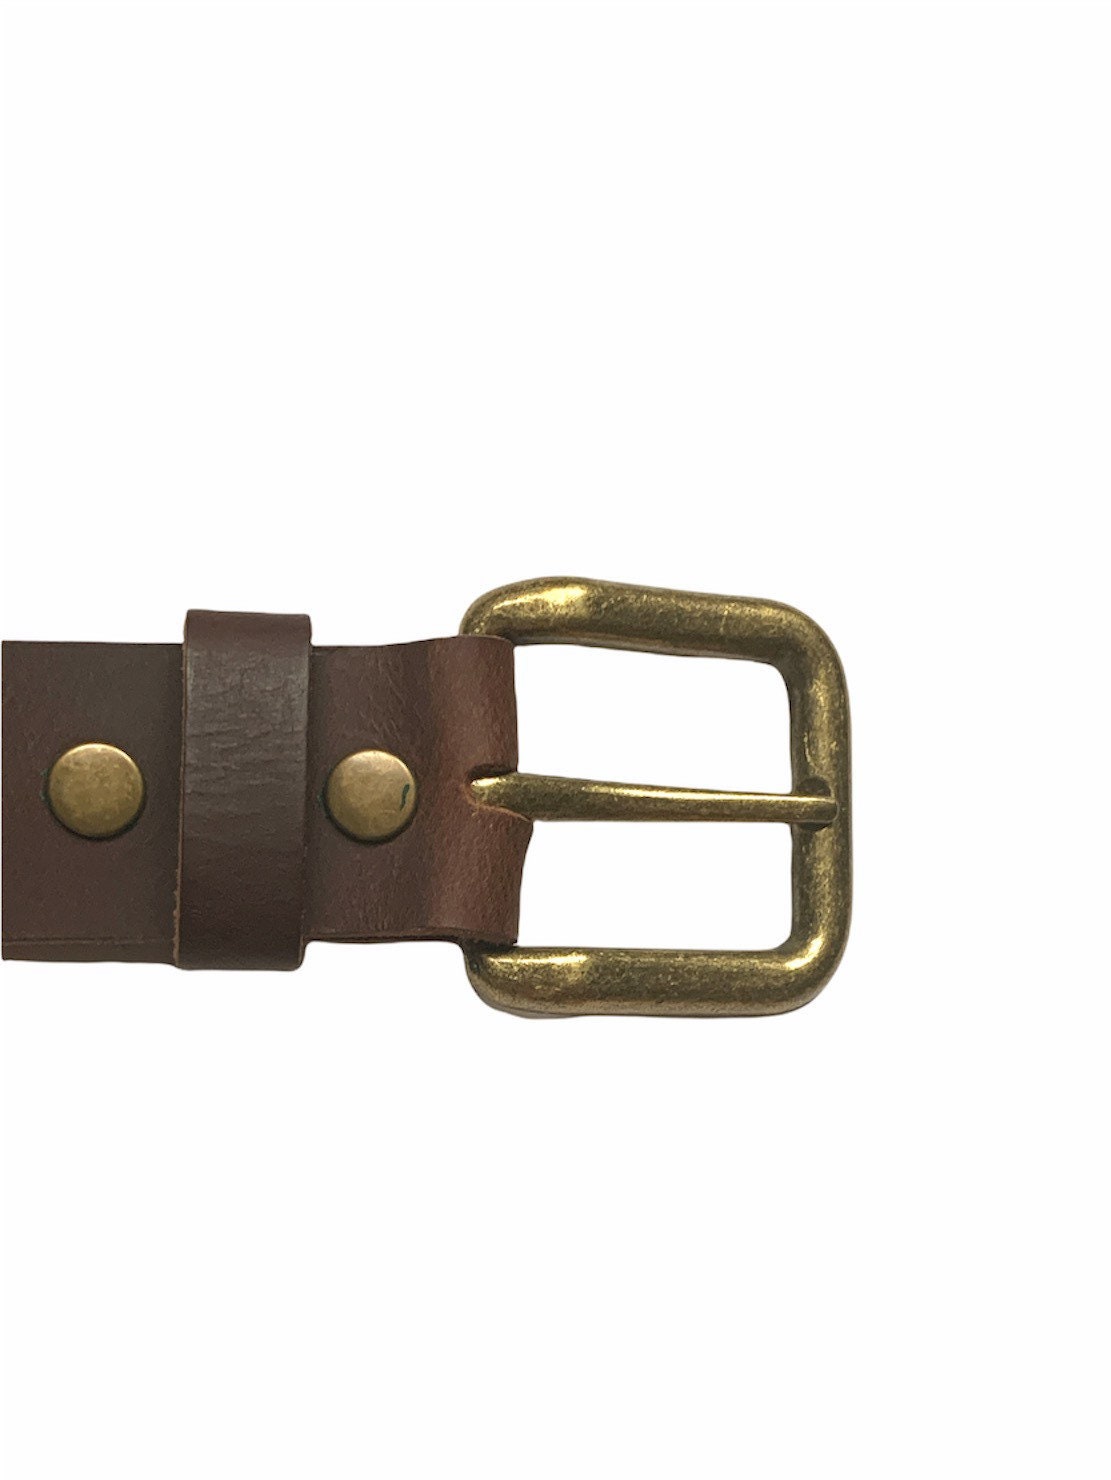 Cinturón de a  Hebilla en oro latón fundido - Guarnicionería Vilches